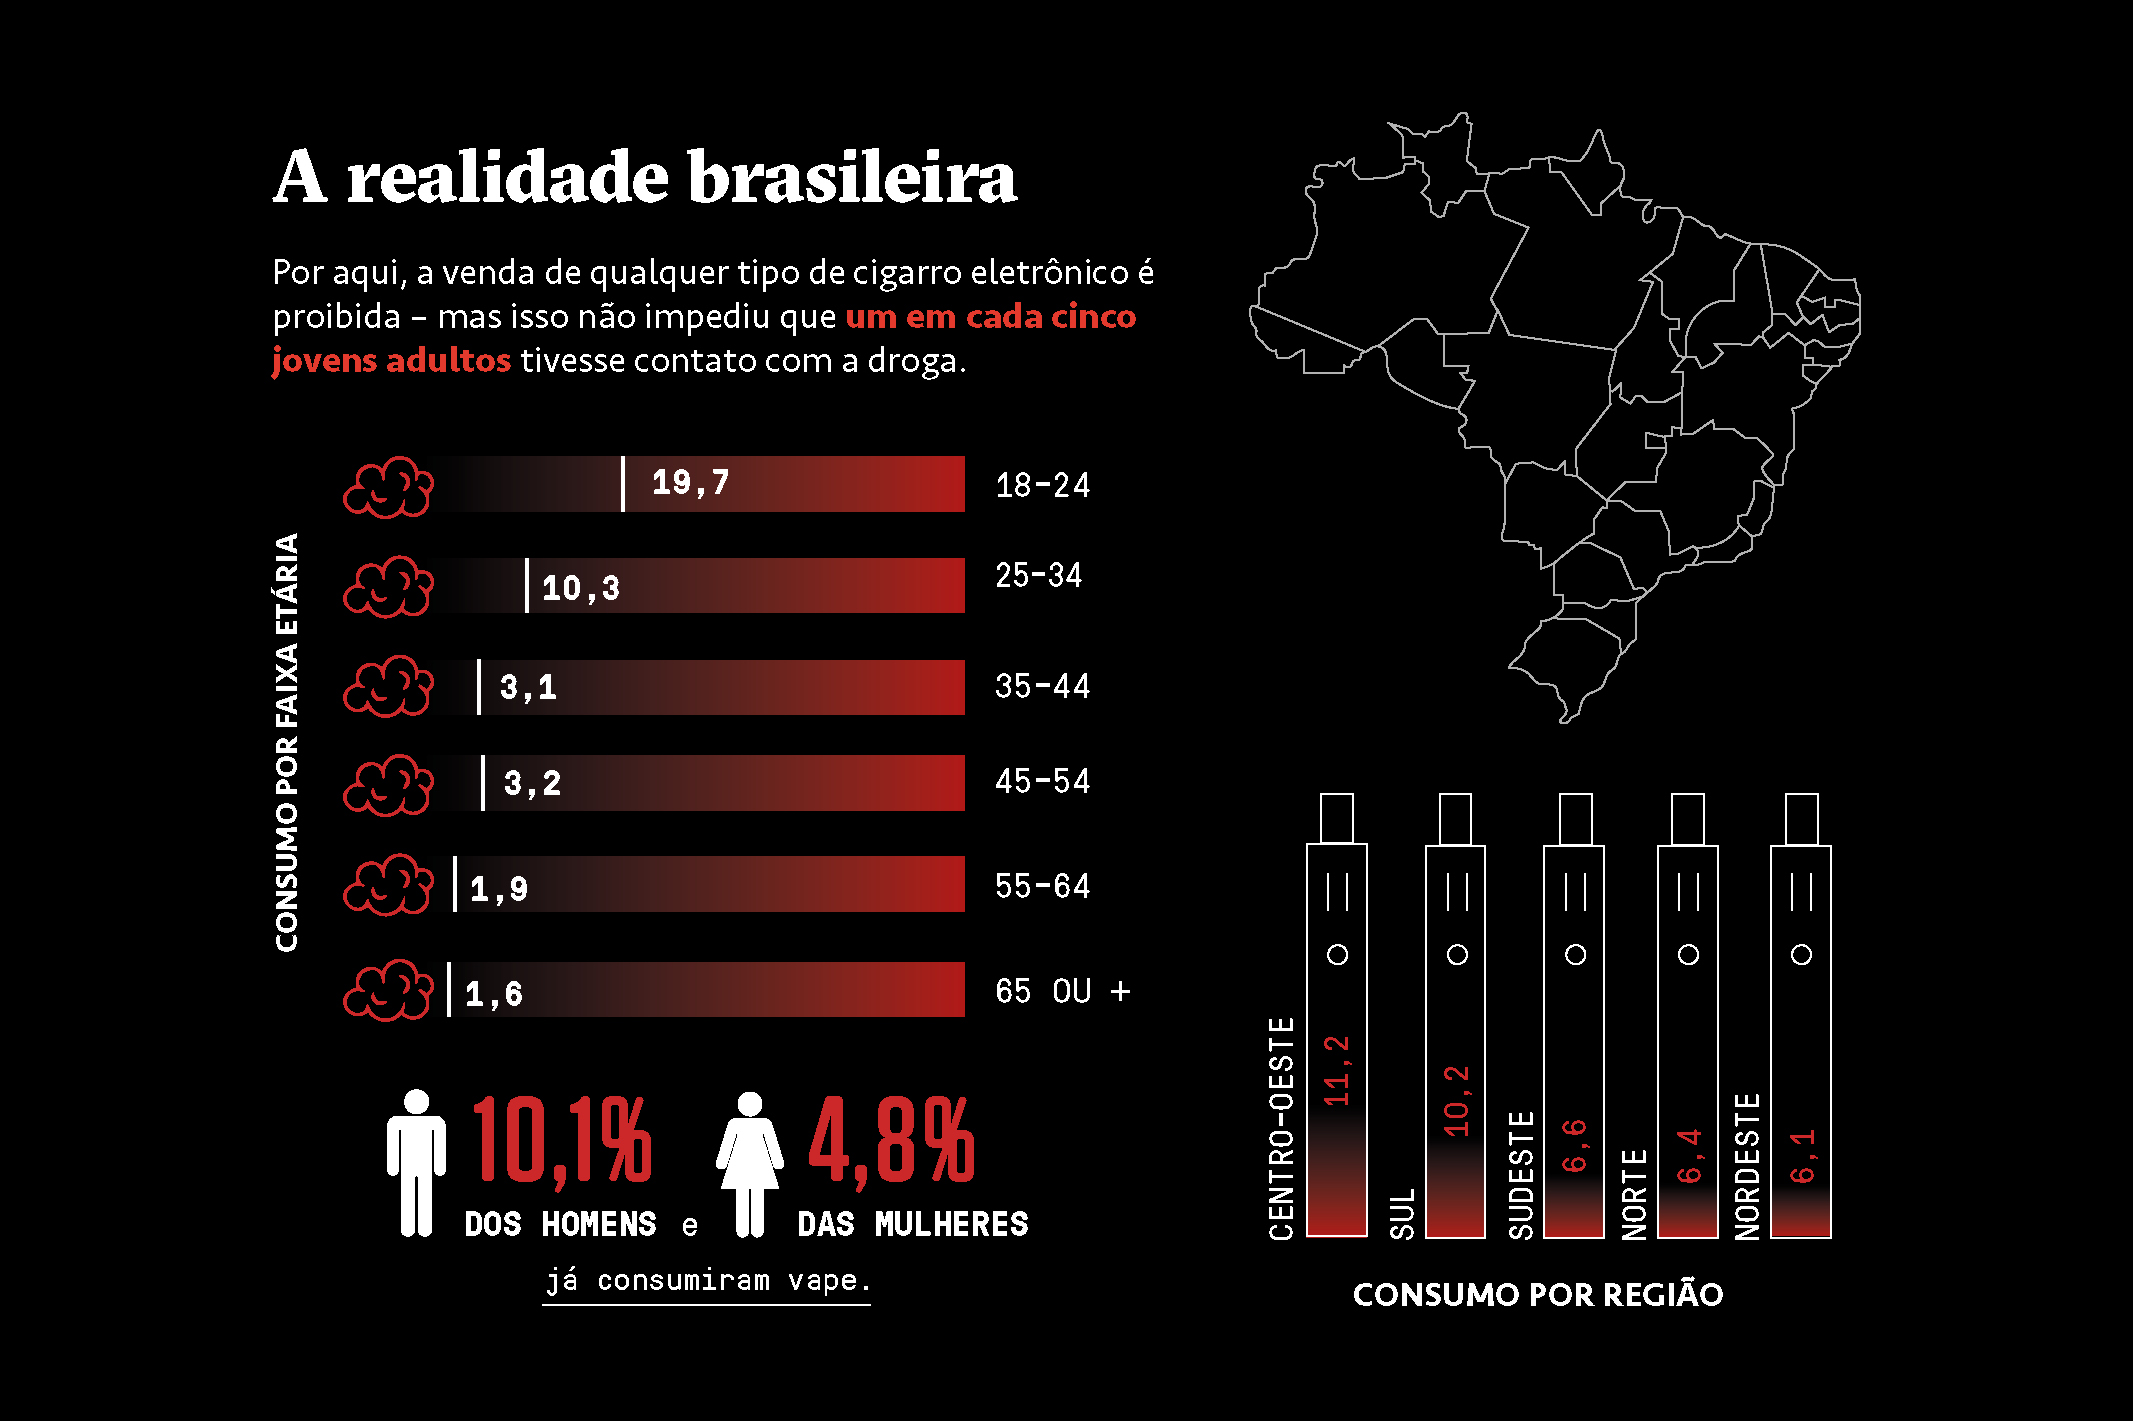 Esquema infográfico sobre os dados do consumo de vapes no Brasil.